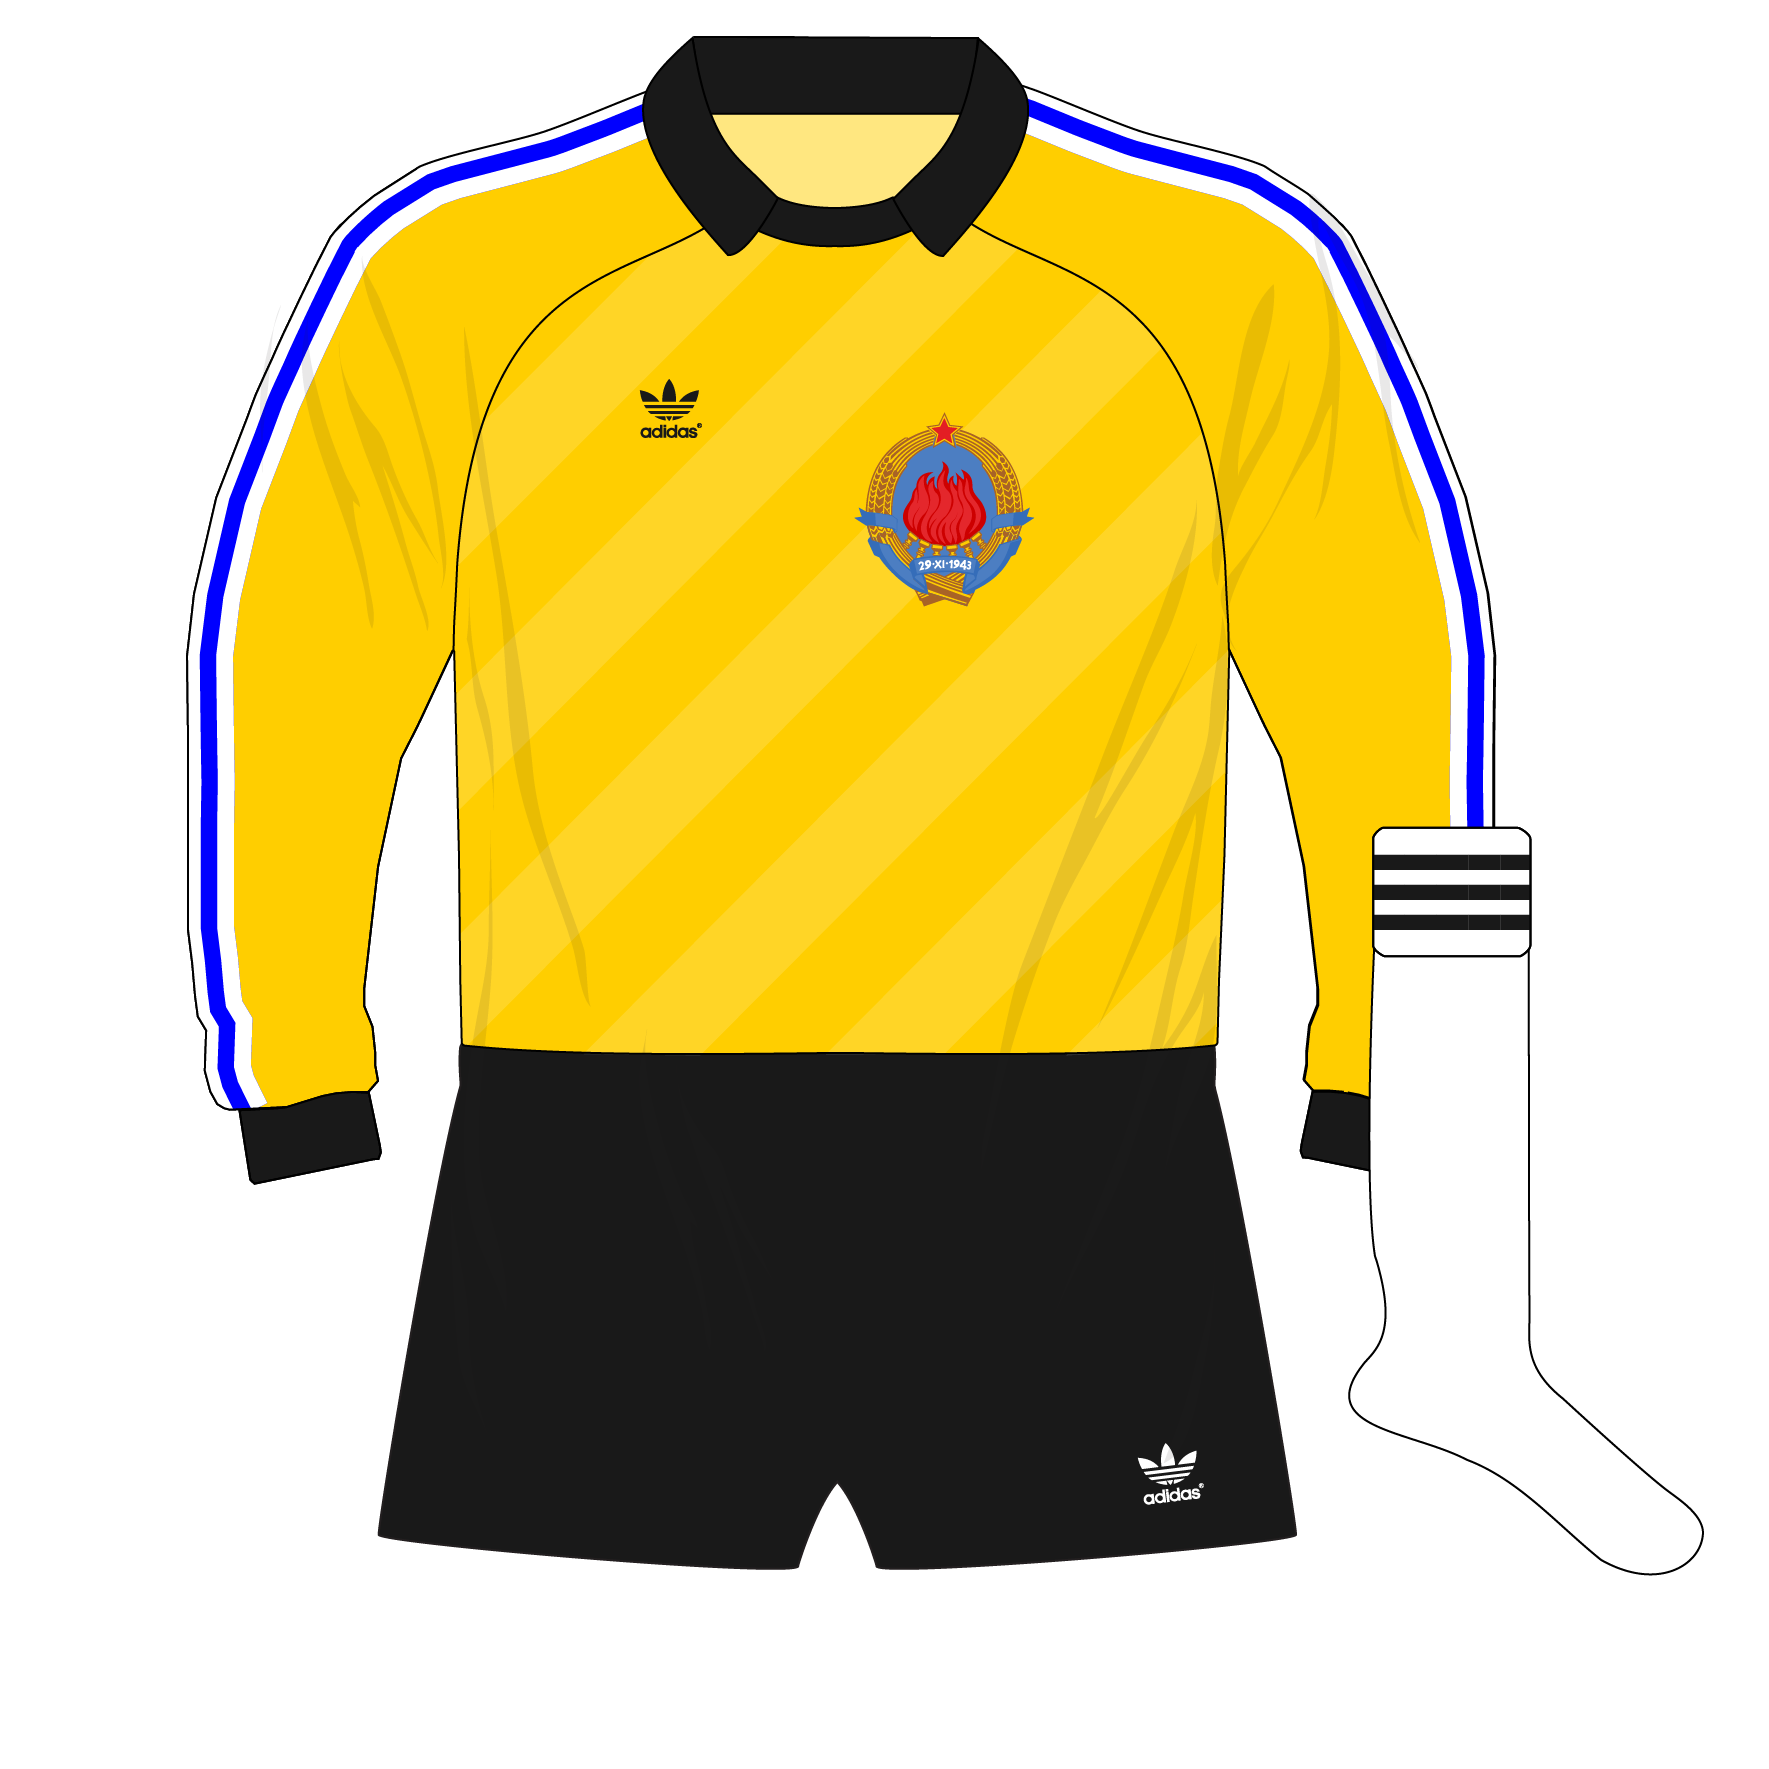 adidas-steaua-bucharest-goalkeeper-shirt-jersey-1986-duckadam –